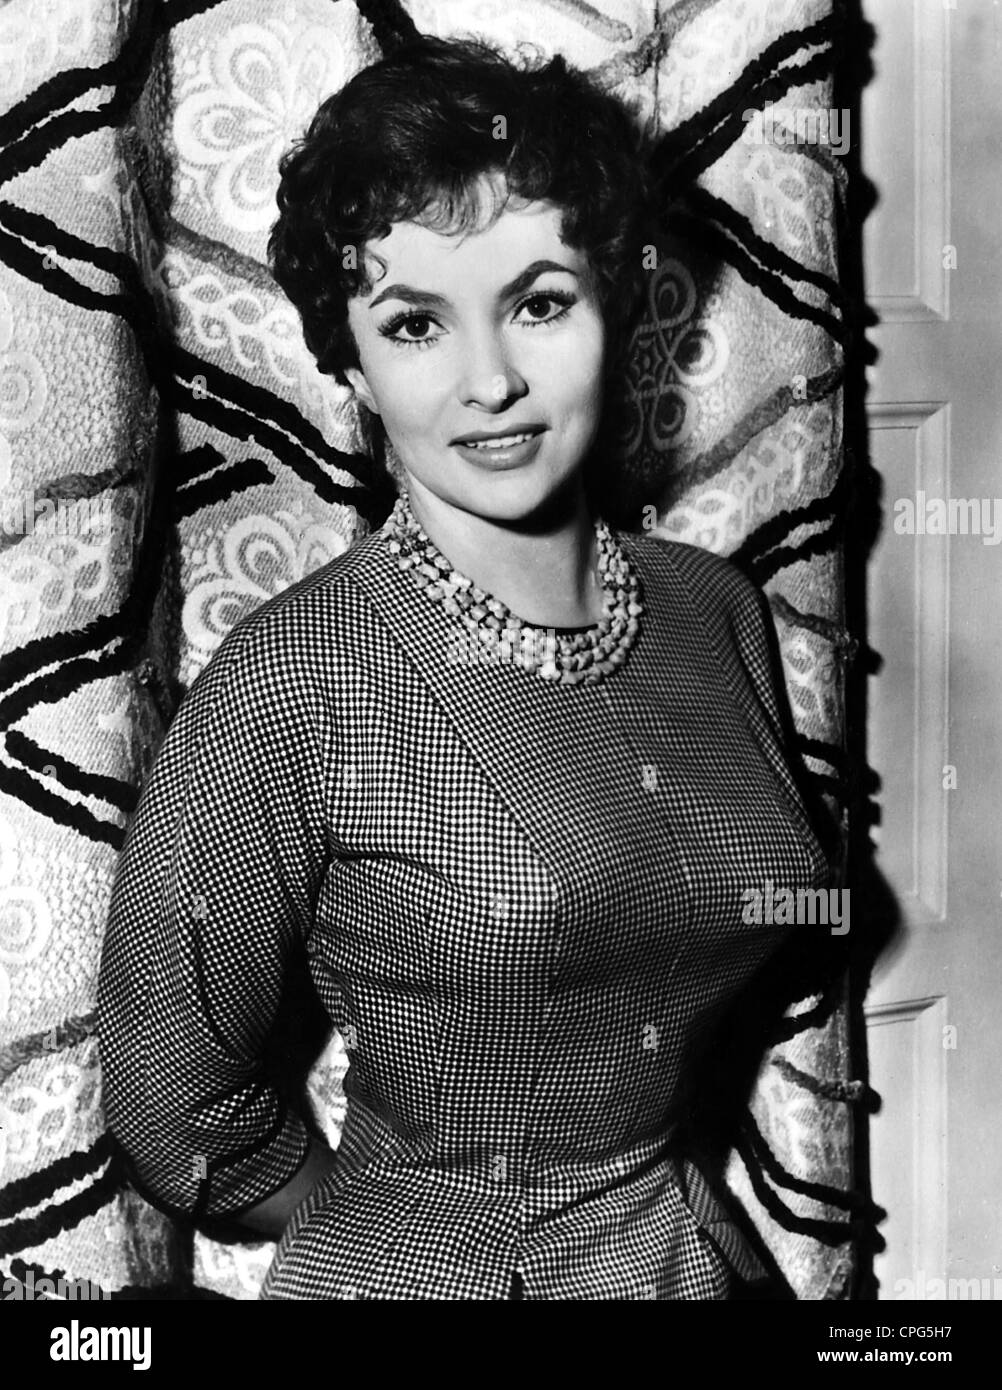 Lollobrigida, Gina, * 4.7.1927, italienische Schauspielerin, halbe Länge, 1950er Jahre, Stockfoto